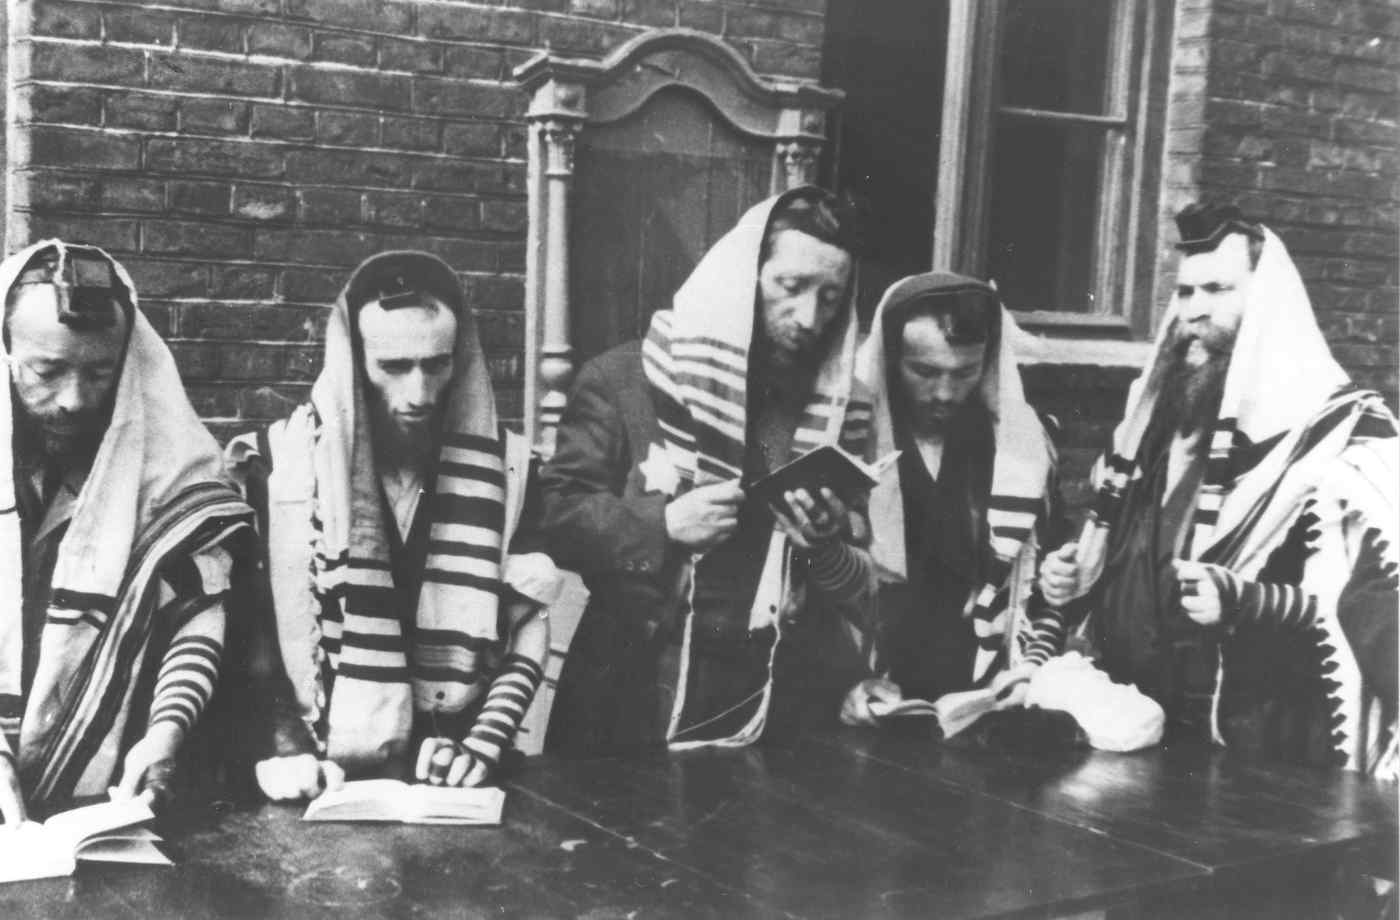 Juifs priant dans le ghetto de Lodz photo de propagande nazie